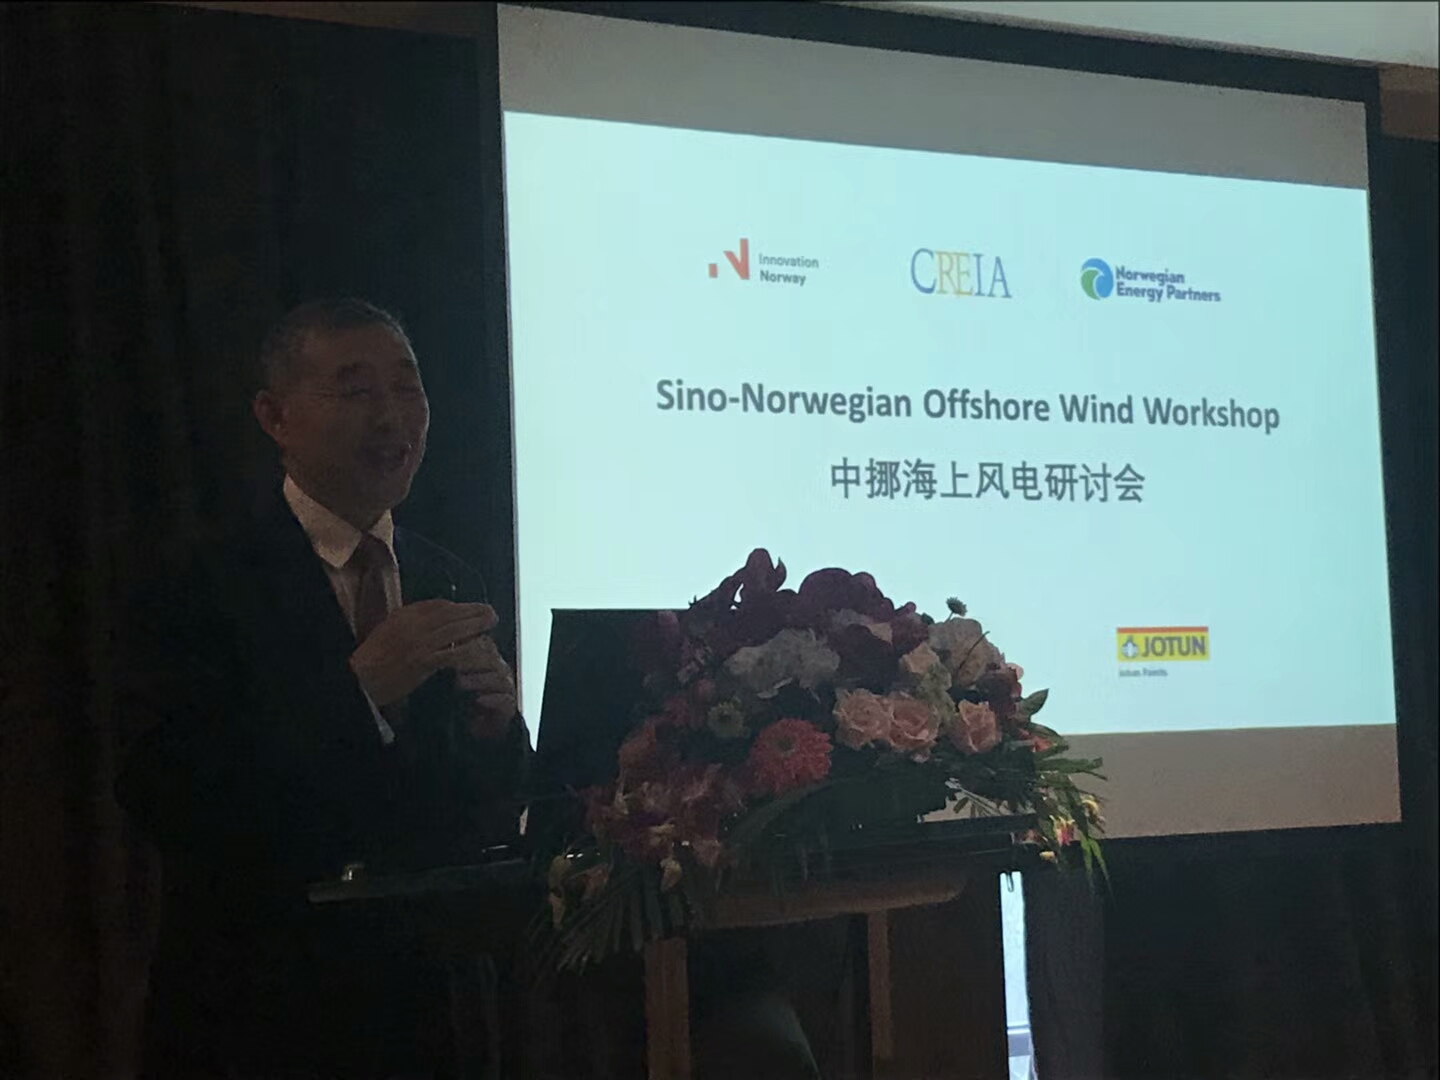 NEEC organized the Sino-Norwegian Offshore Wind Workshop in Beijing